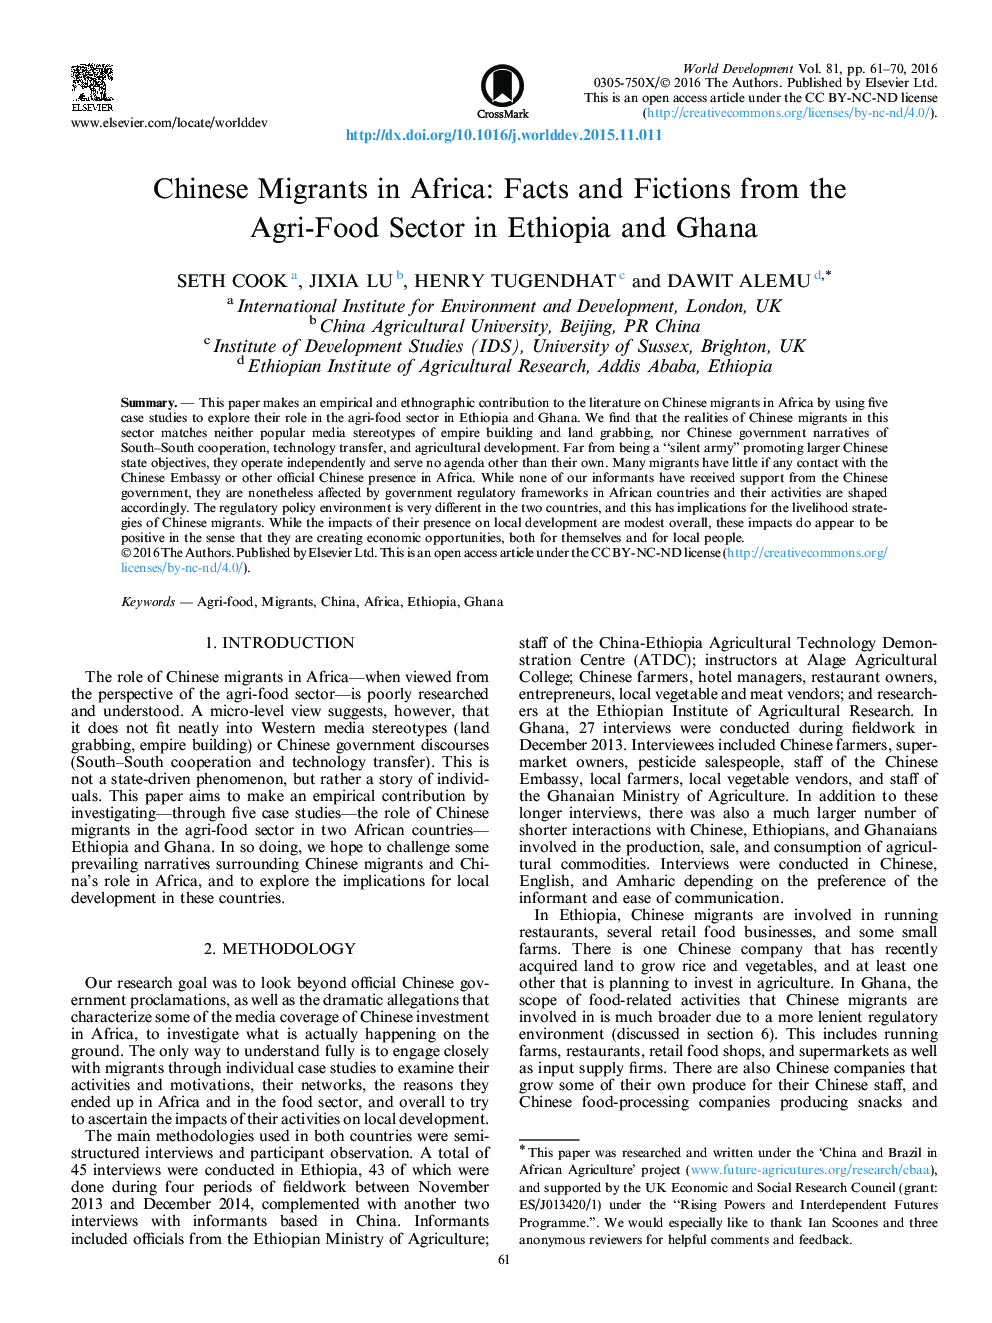 مهاجران چینی در آفریقا: آمار و داستان از بخش کشاورزی ـ غذا در اتیوپی و غنا